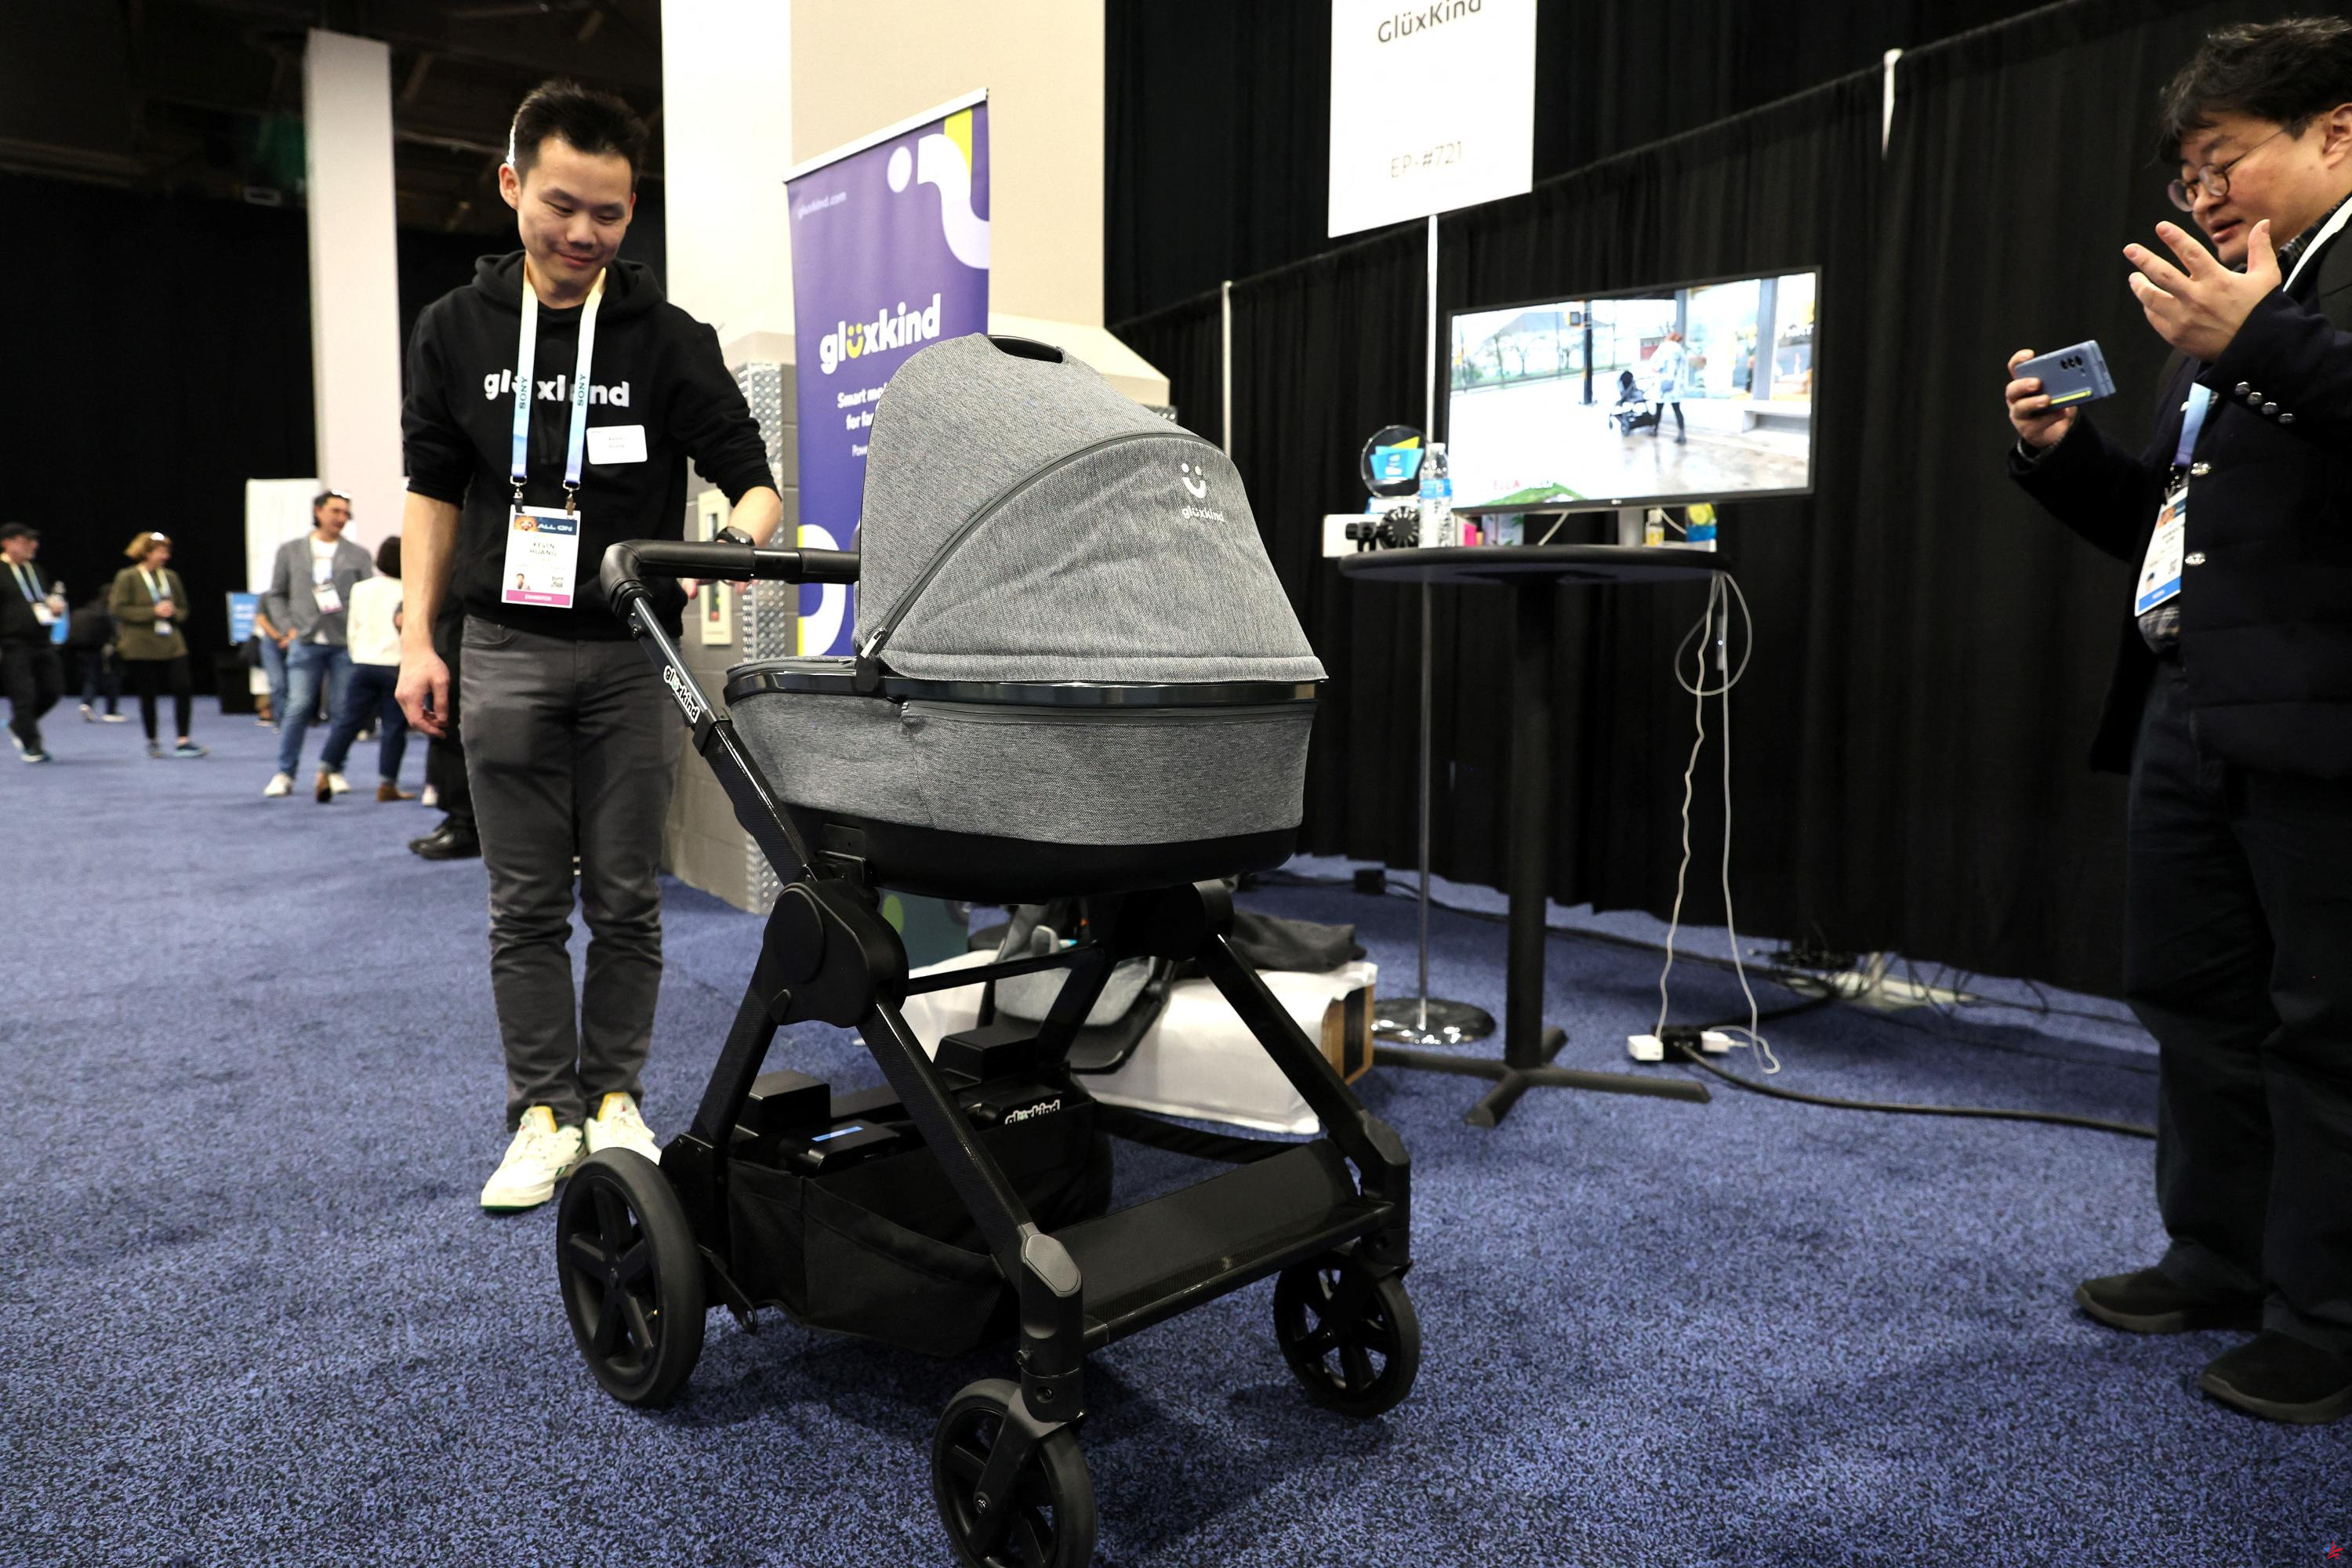 En el CES de Las Vegas, la tecnología diagnostica enfermedades y mece a los bebés gracias a la IA